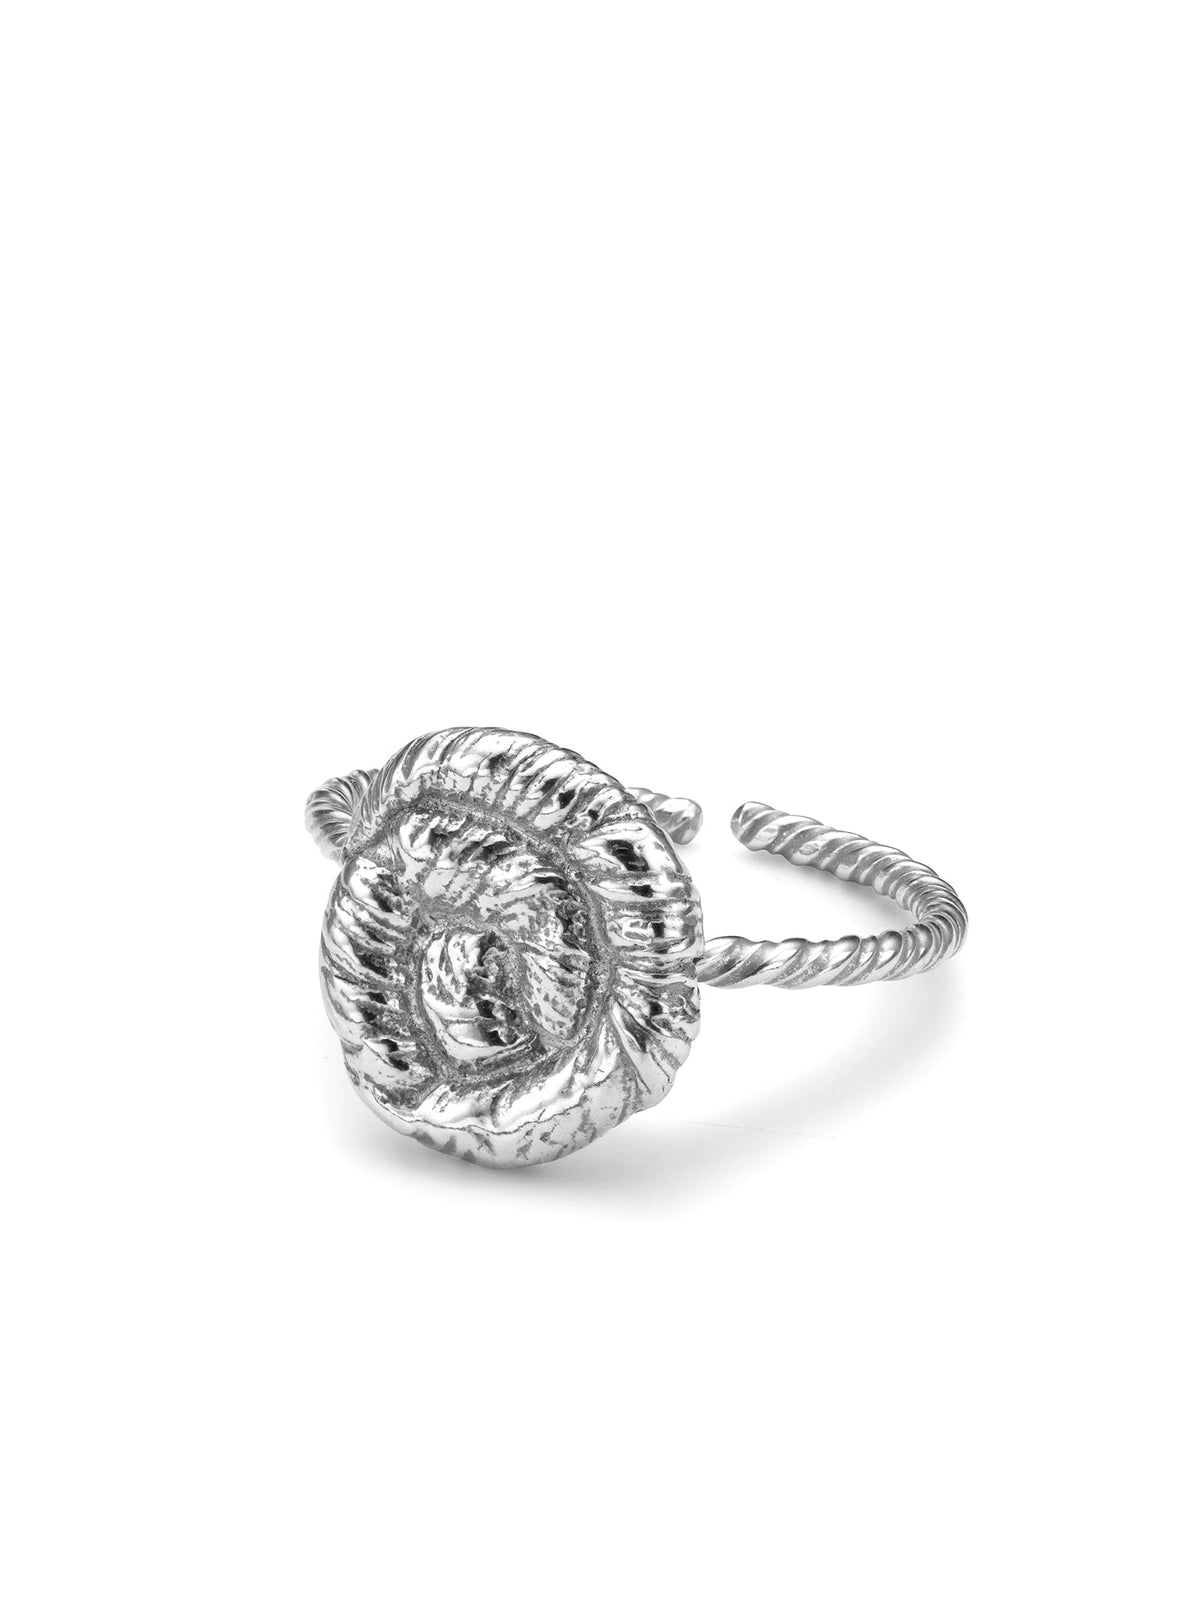 Nautilus Ring Silver